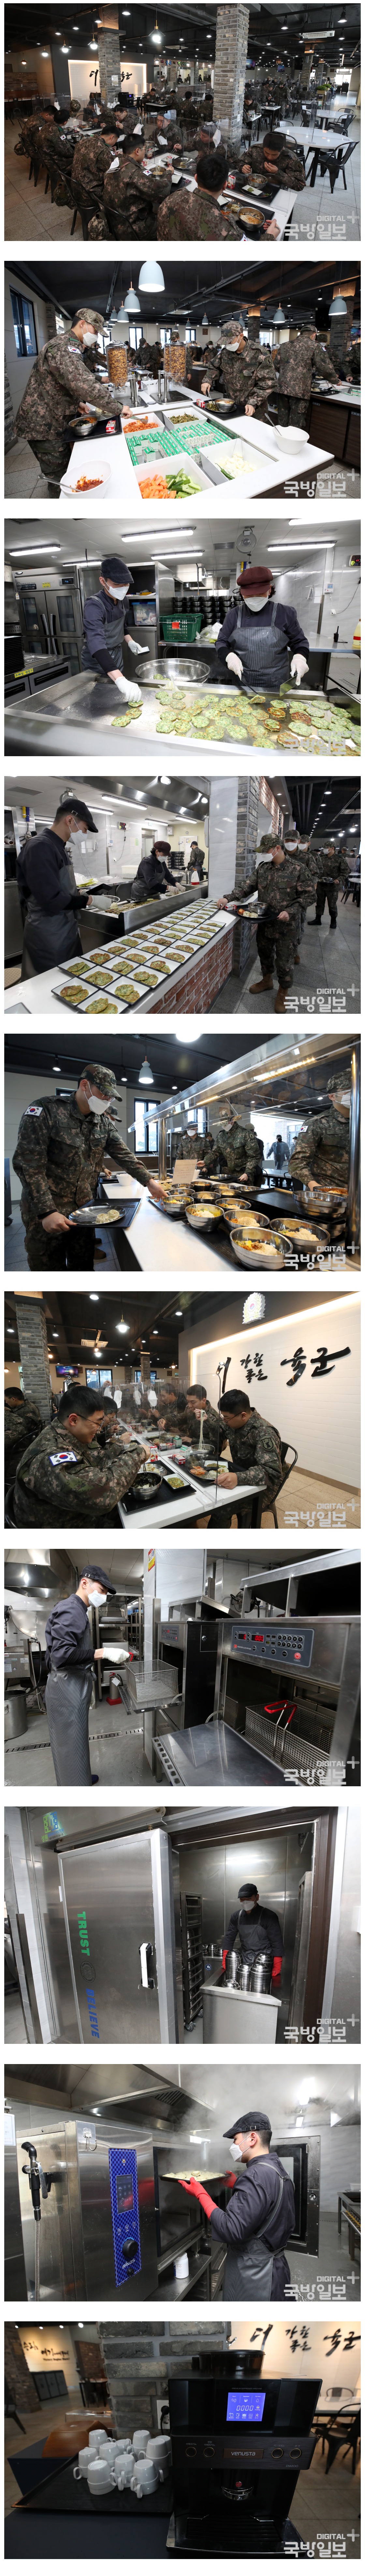 요즘 육군아미타이거 식당수준.jpg